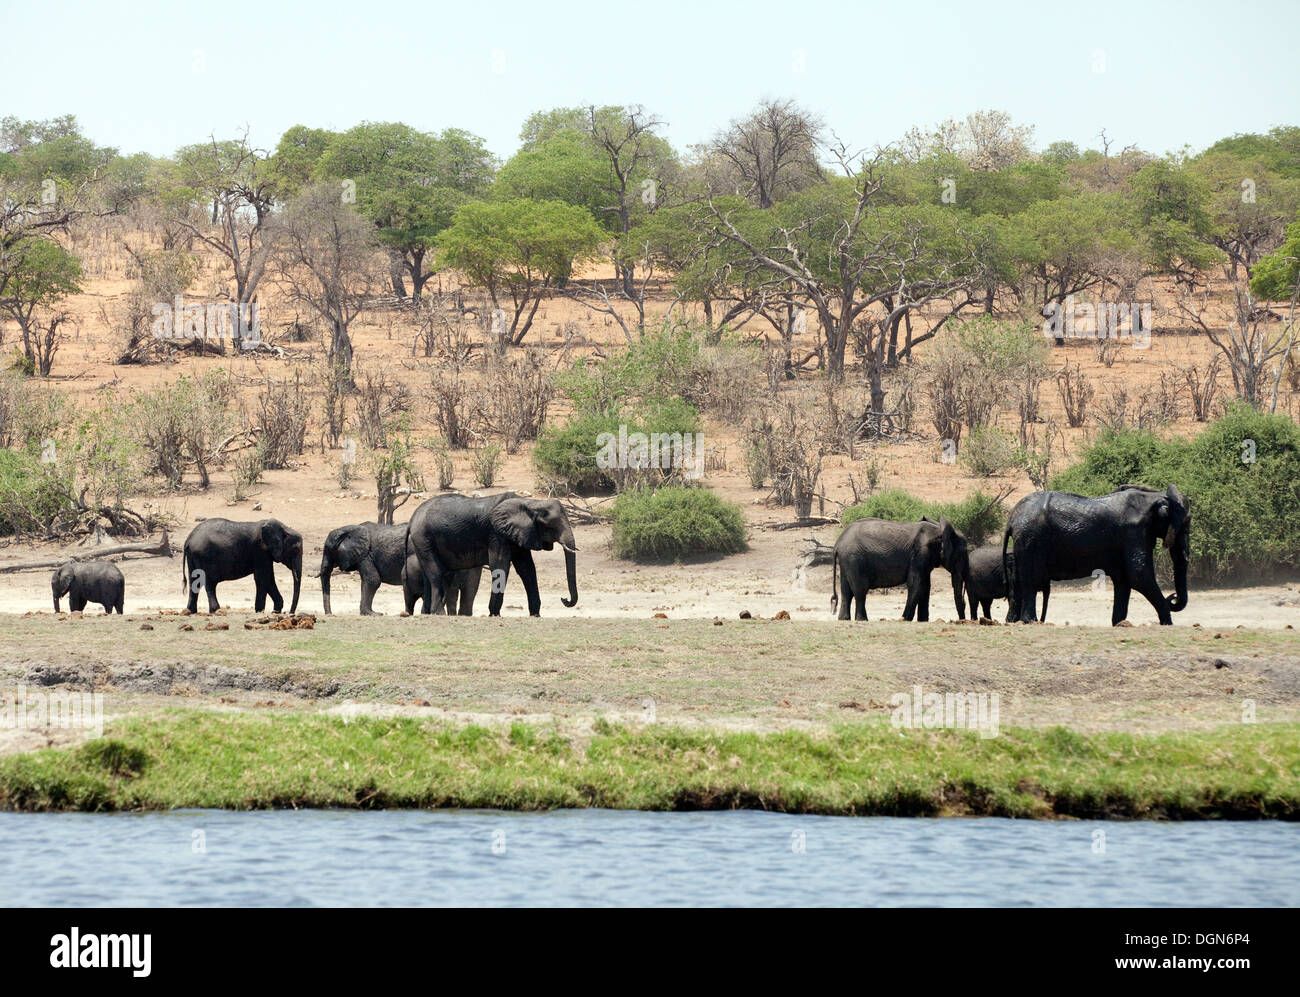 Un troupeau d'éléphants africains, Chobe National Park, Botswana Afrique scène Banque D'Images